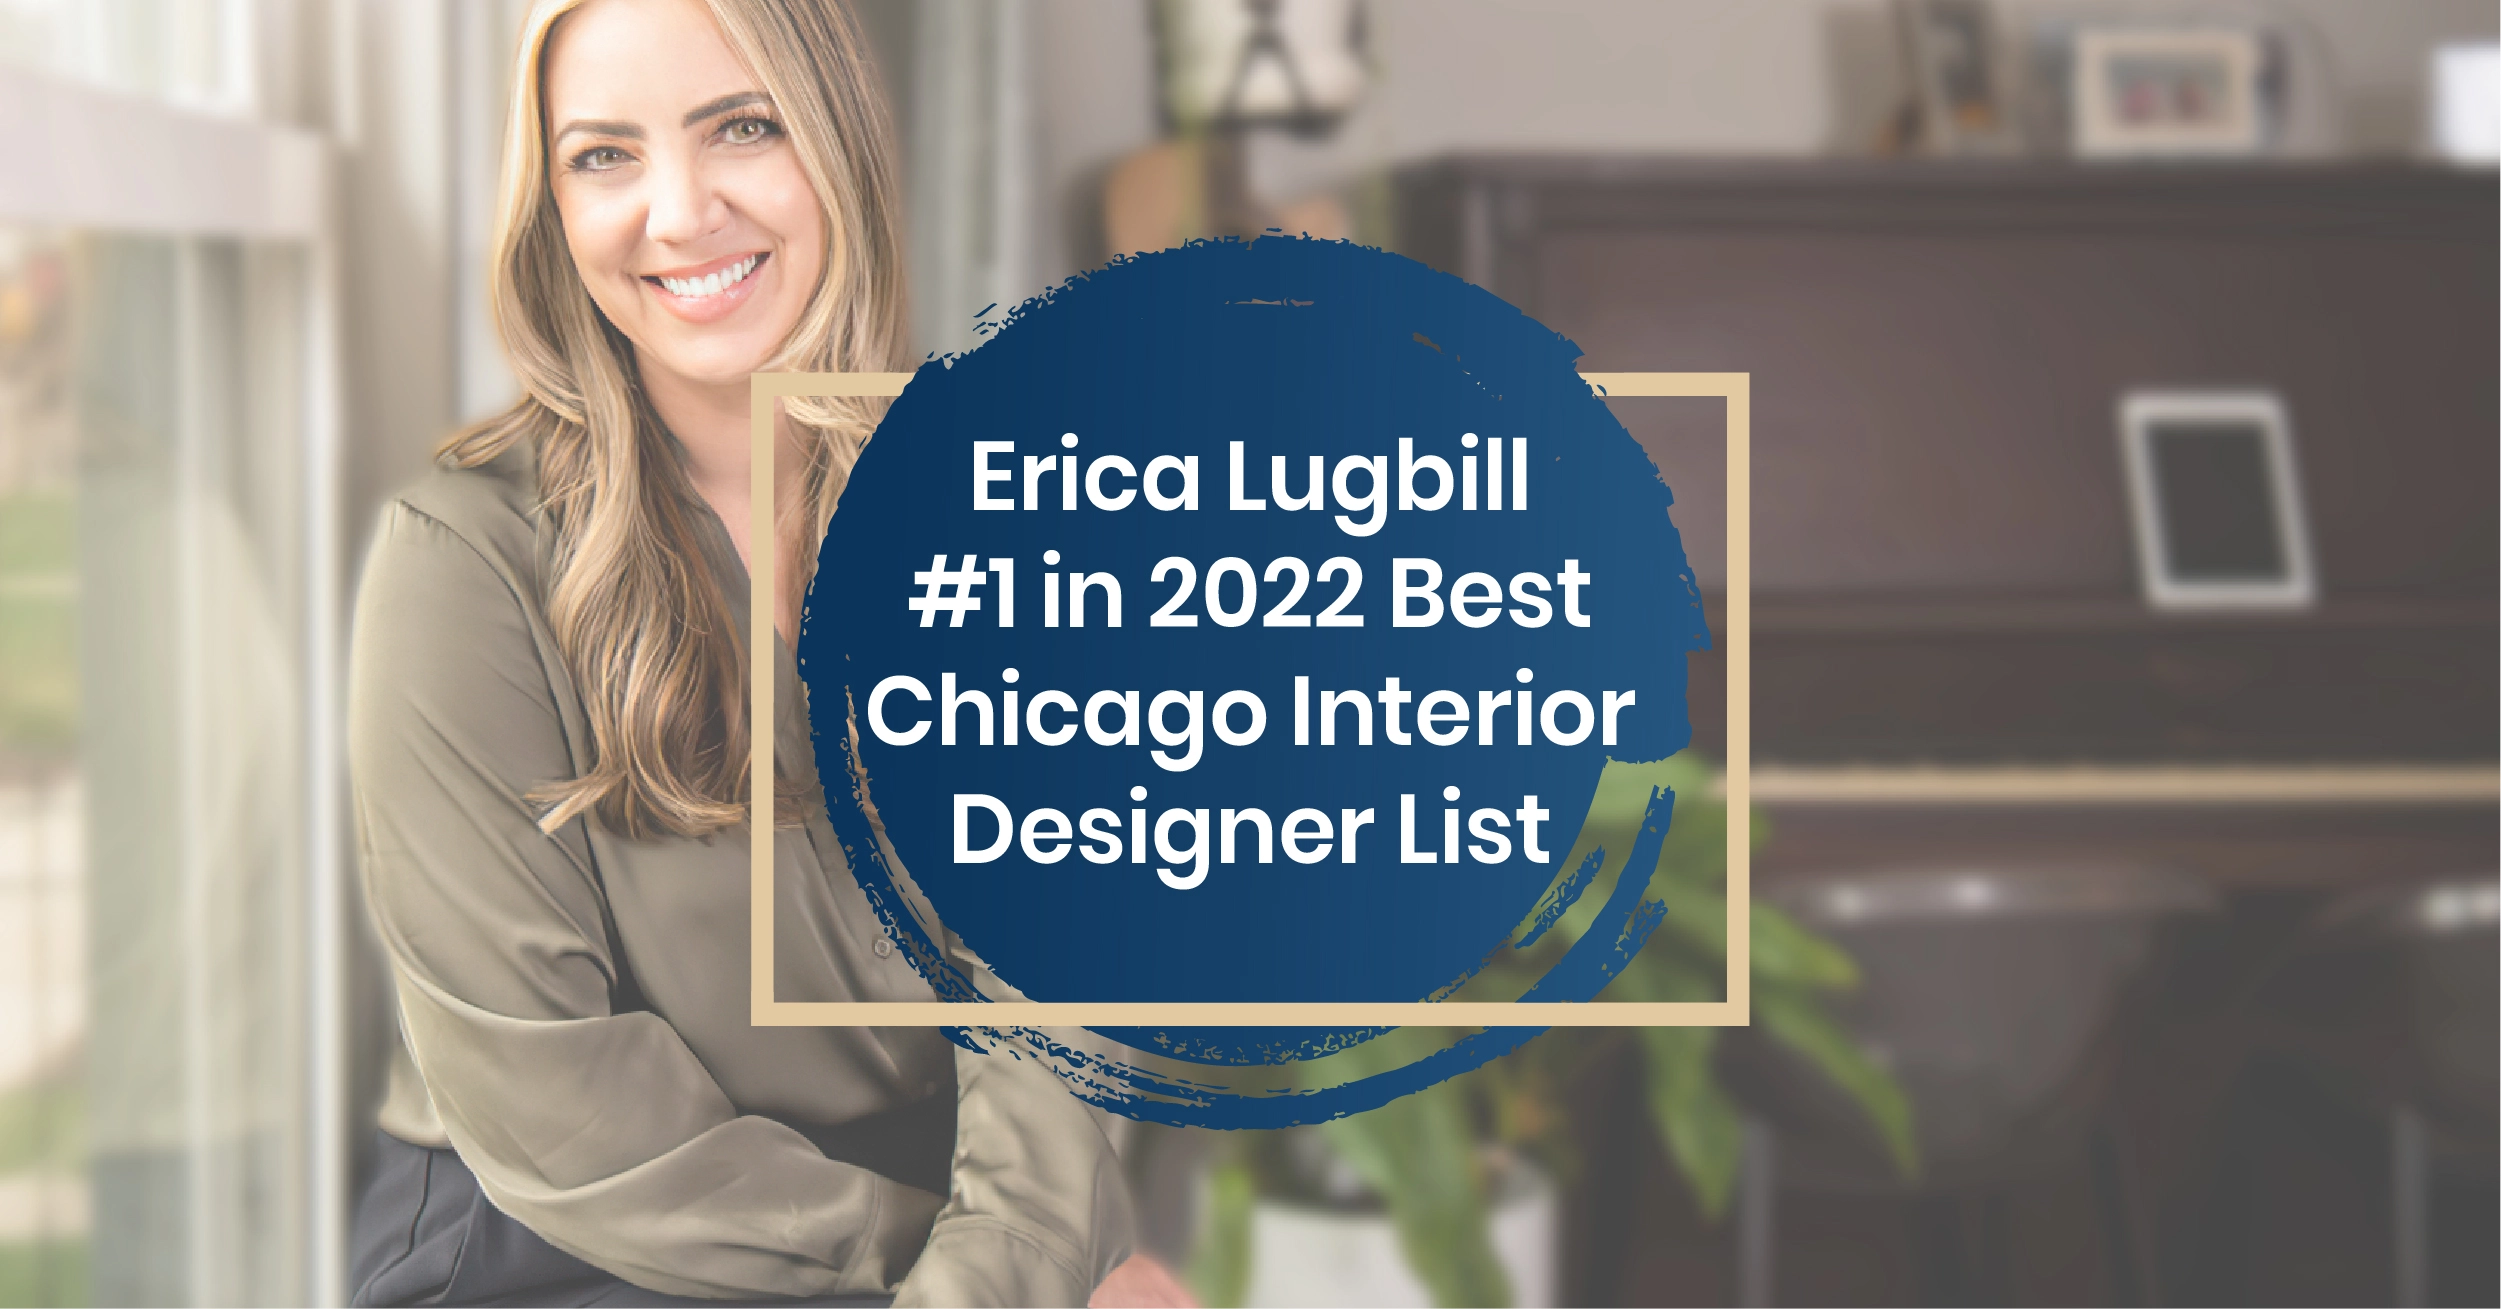 Top Chicago Interior Designer, Erica Lugbill